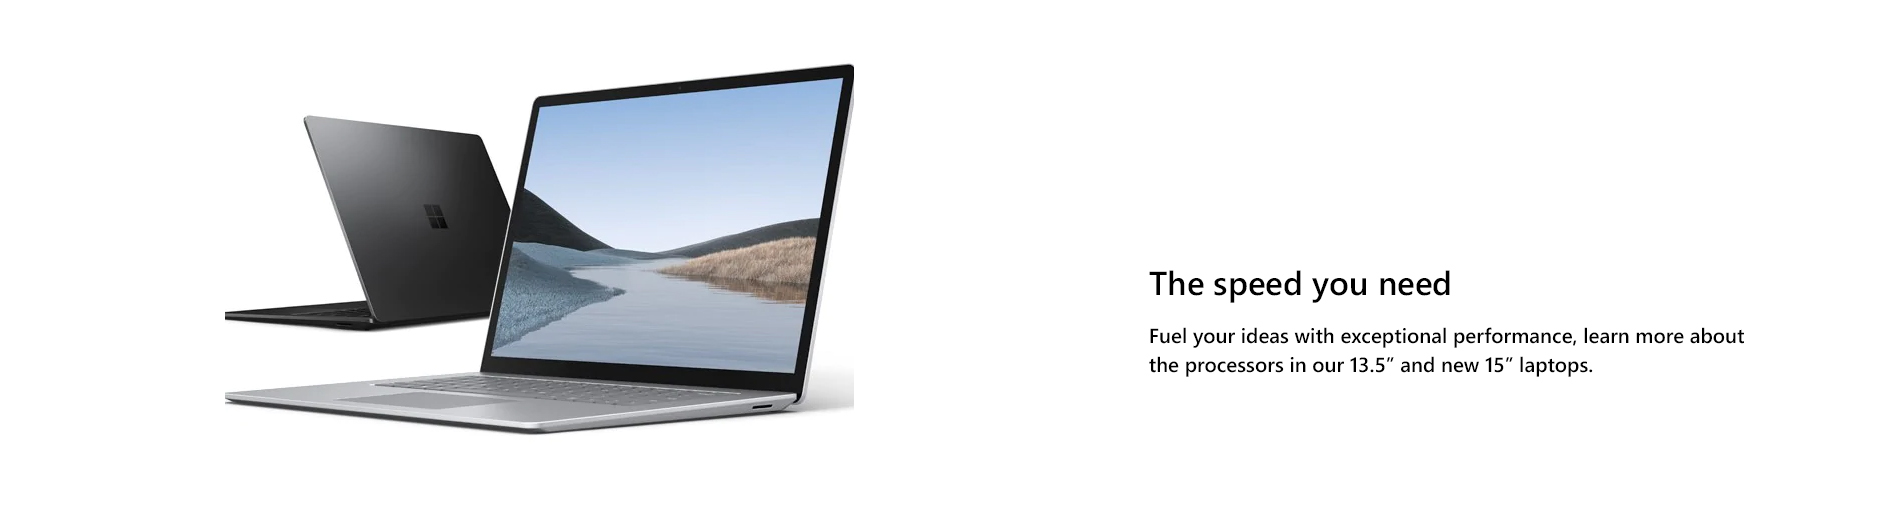 Microsoft Surface Laptop3 General Landing Page Tile 08